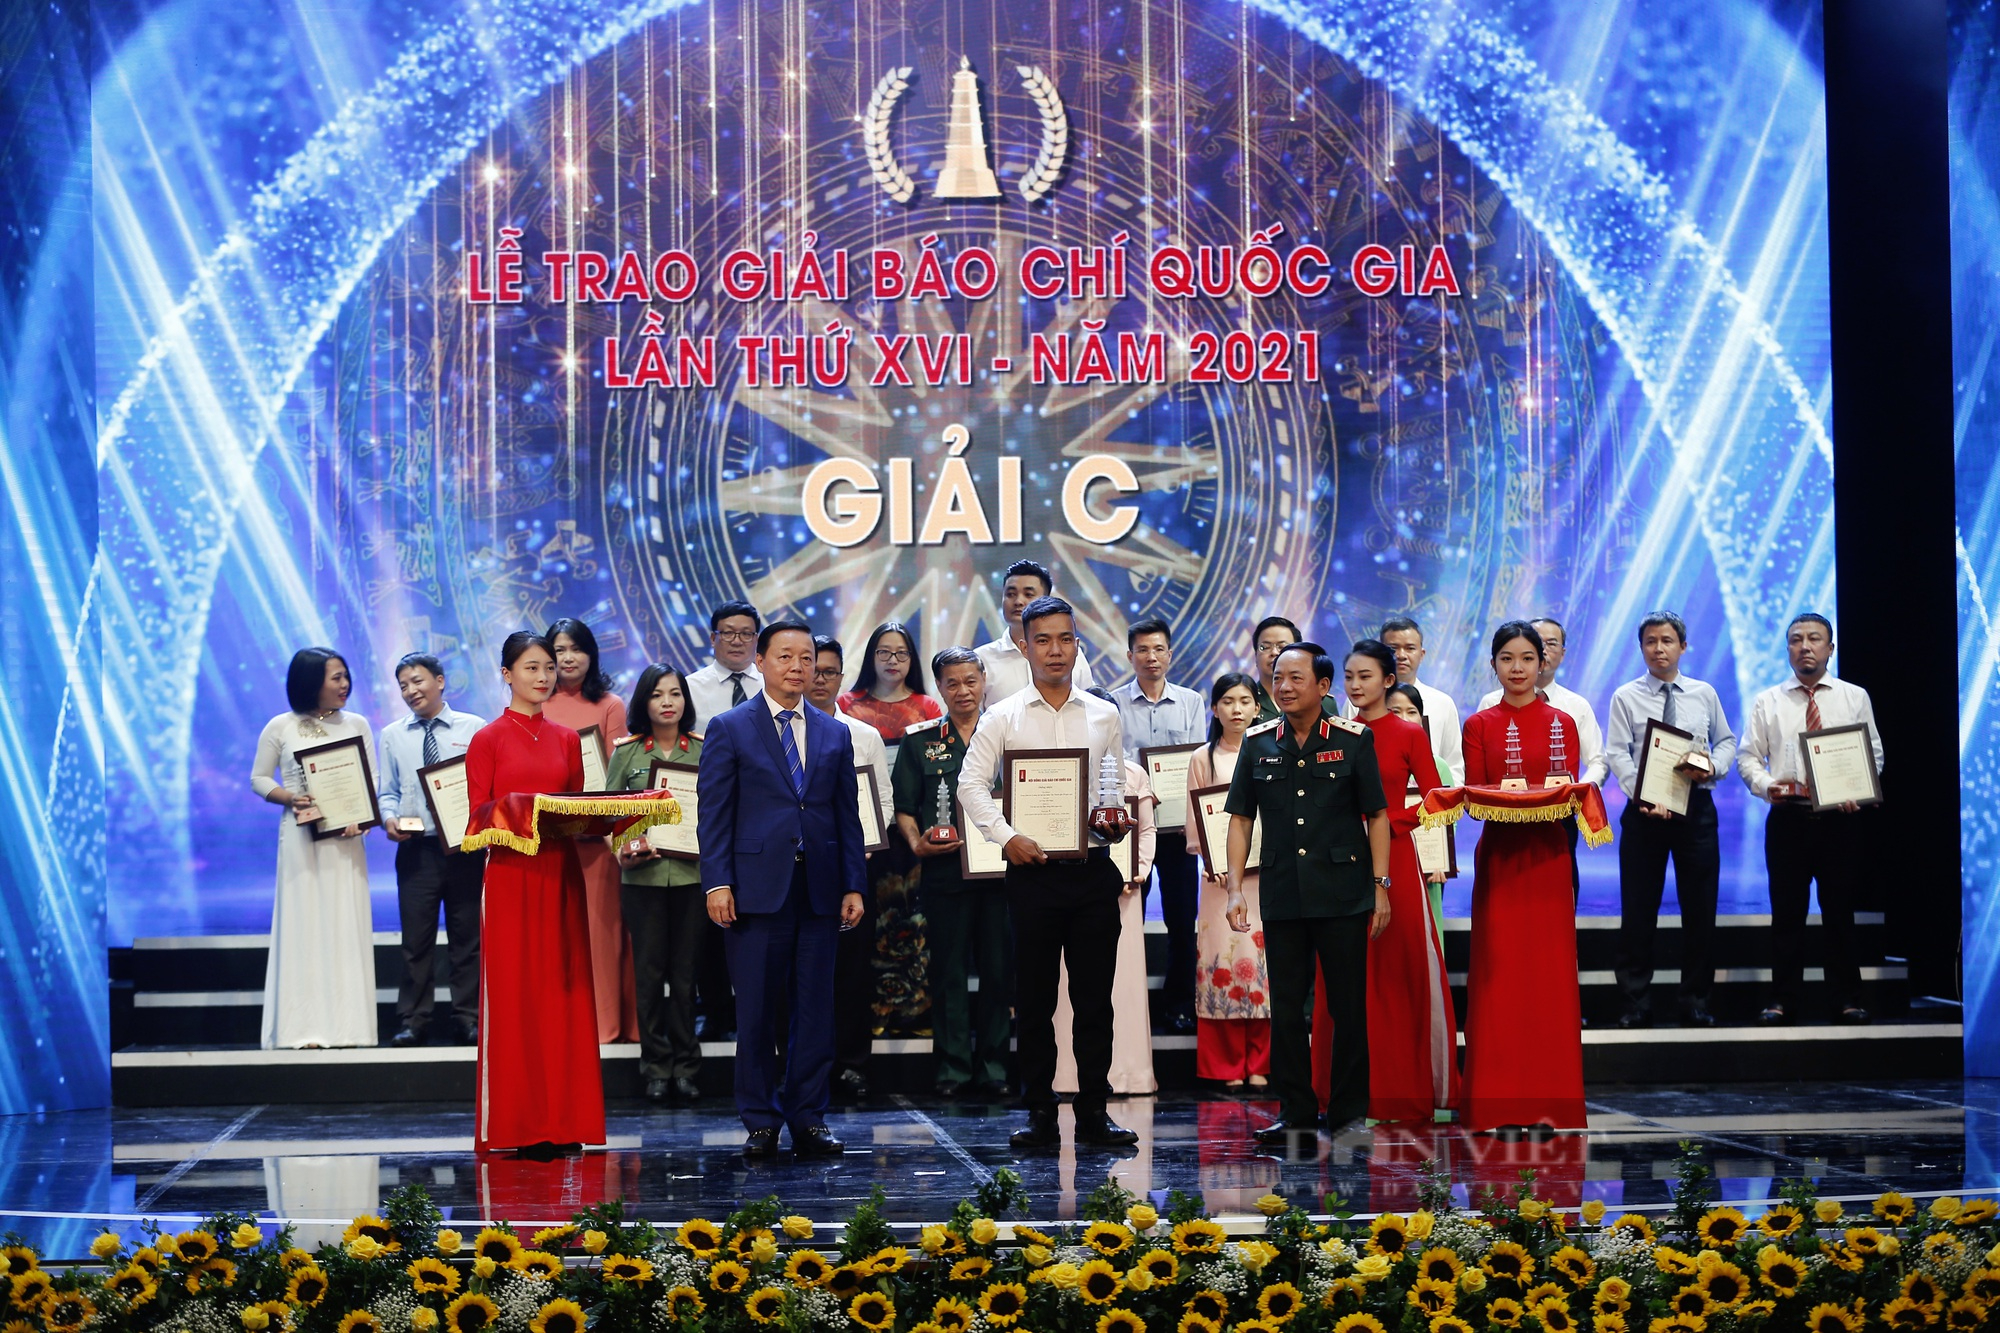 Báo NTNN/Dân Việt đoạt hàng loạt Giải Báo chí Quốc gia lần thứ XVI - năm 2021 - Ảnh 5.